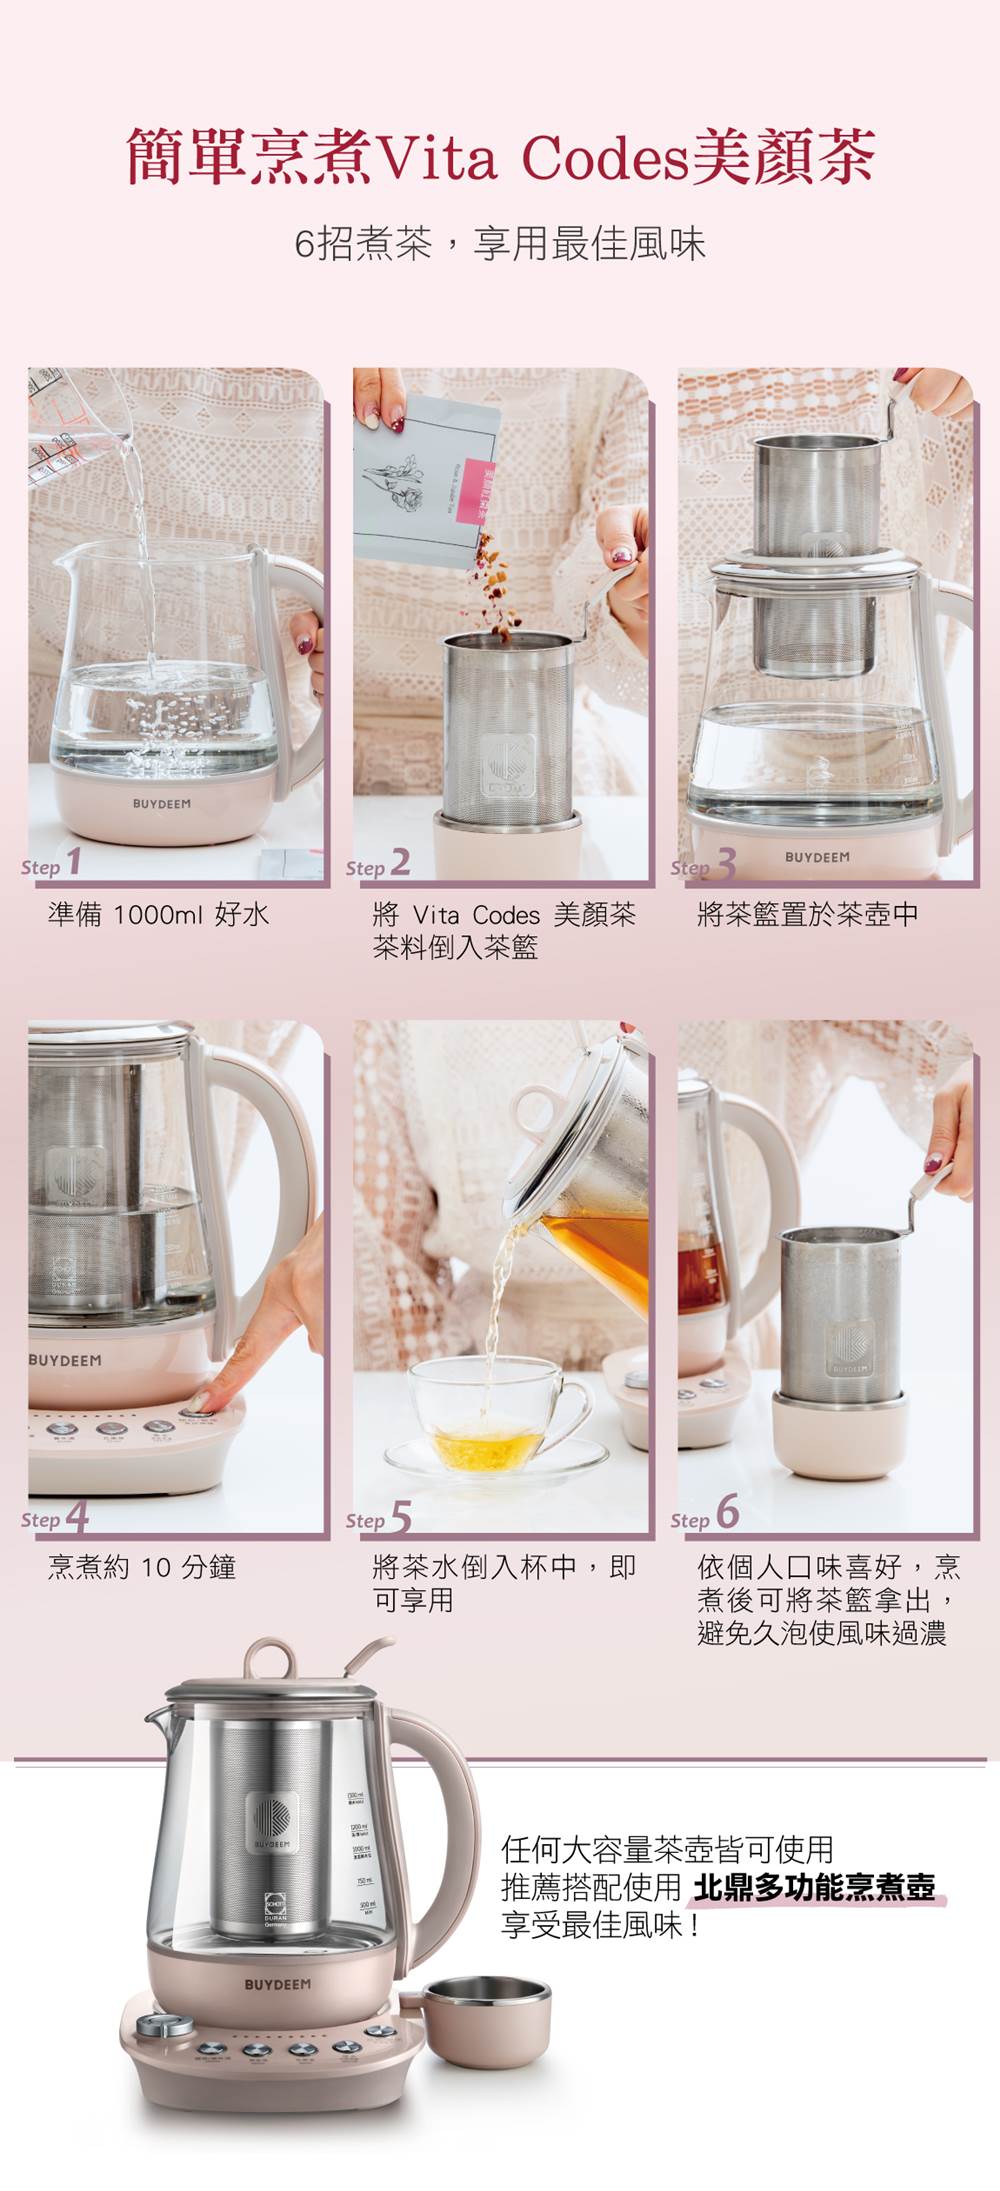 VitaCodes美顏茶-產品介紹11-烹煮步驟-2